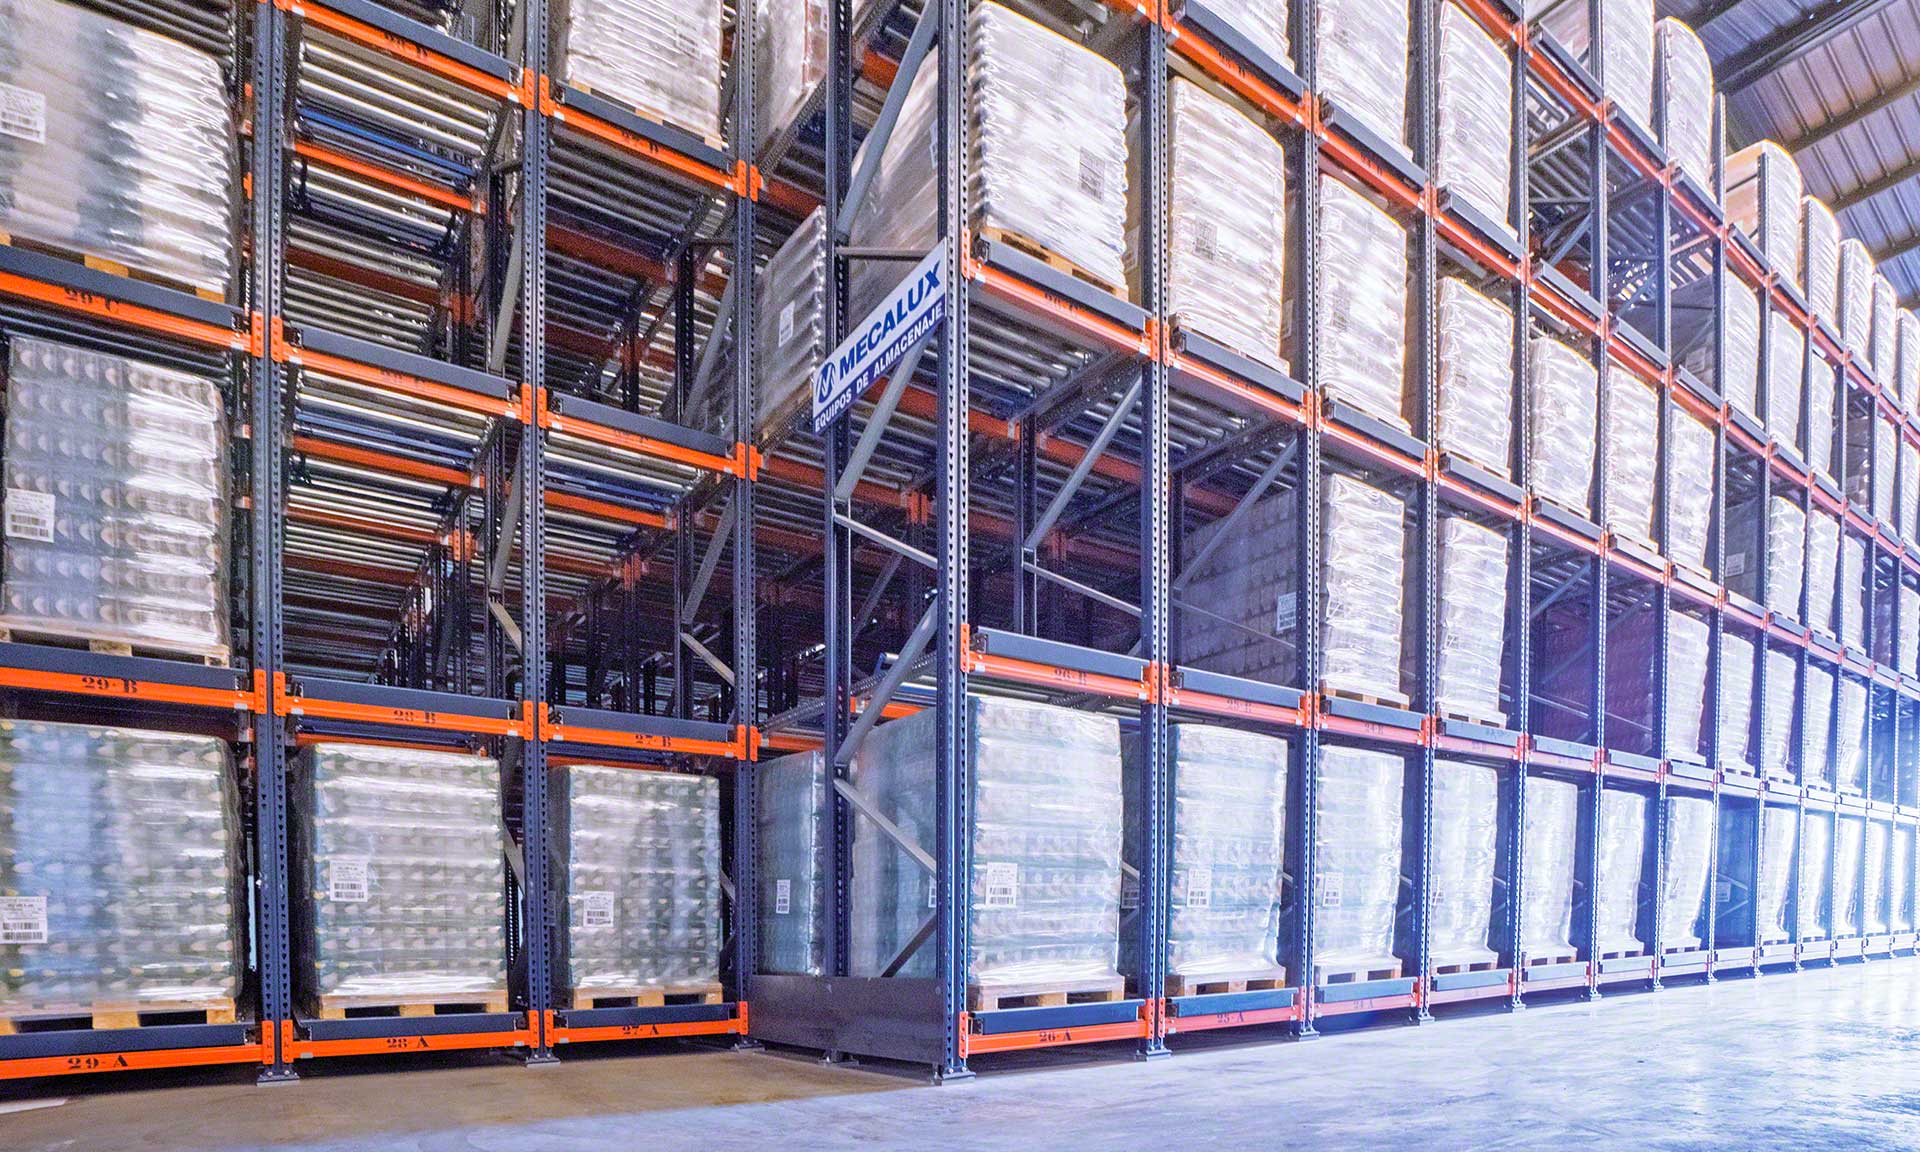 El almacén dinámico de Dacsa posee una capacidad de 1.026 palets con un peso unitario de 1.000 kg